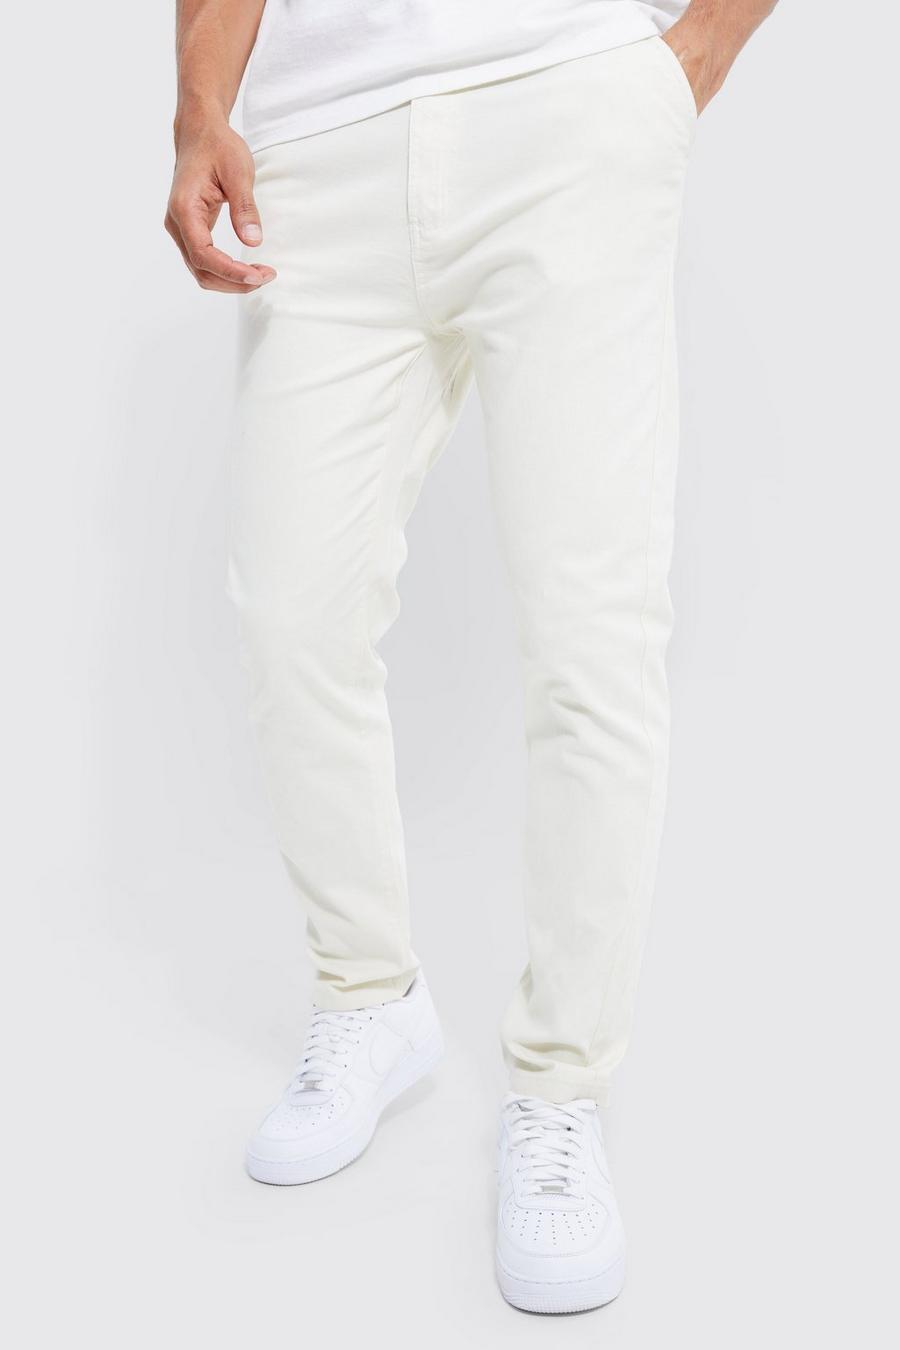 Pantalón chino ajustado elástico con cintura fija, Ecru blanco